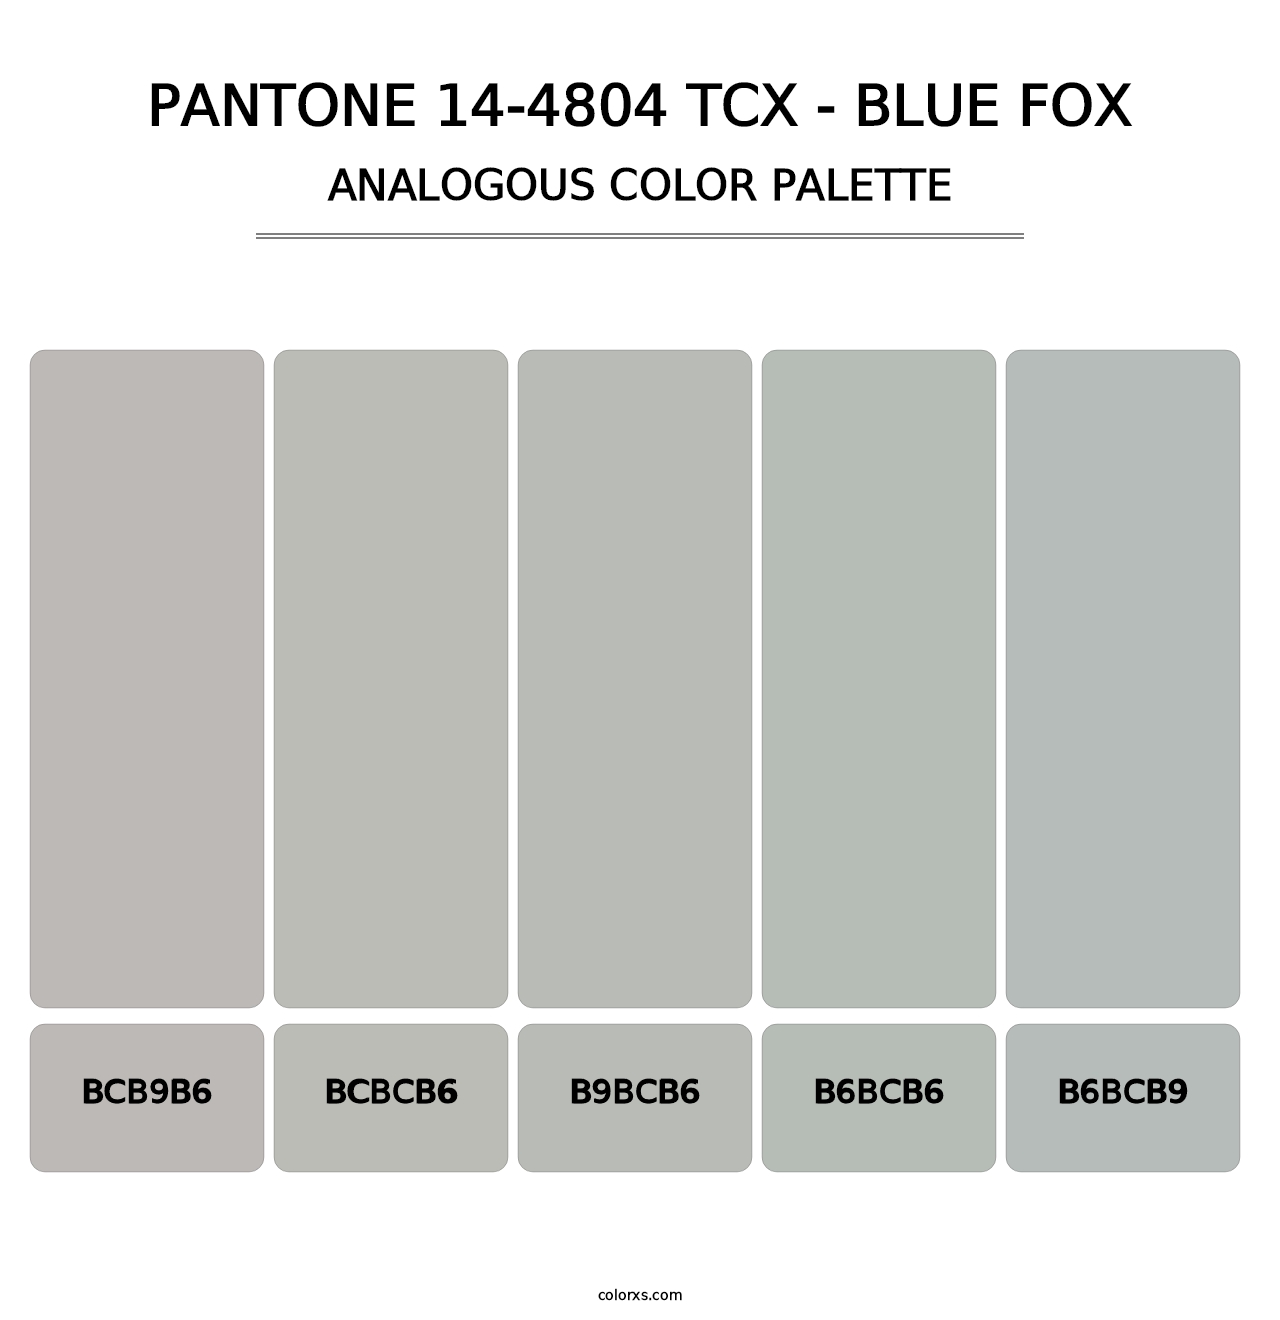 PANTONE 14-4804 TCX - Blue Fox - Analogous Color Palette